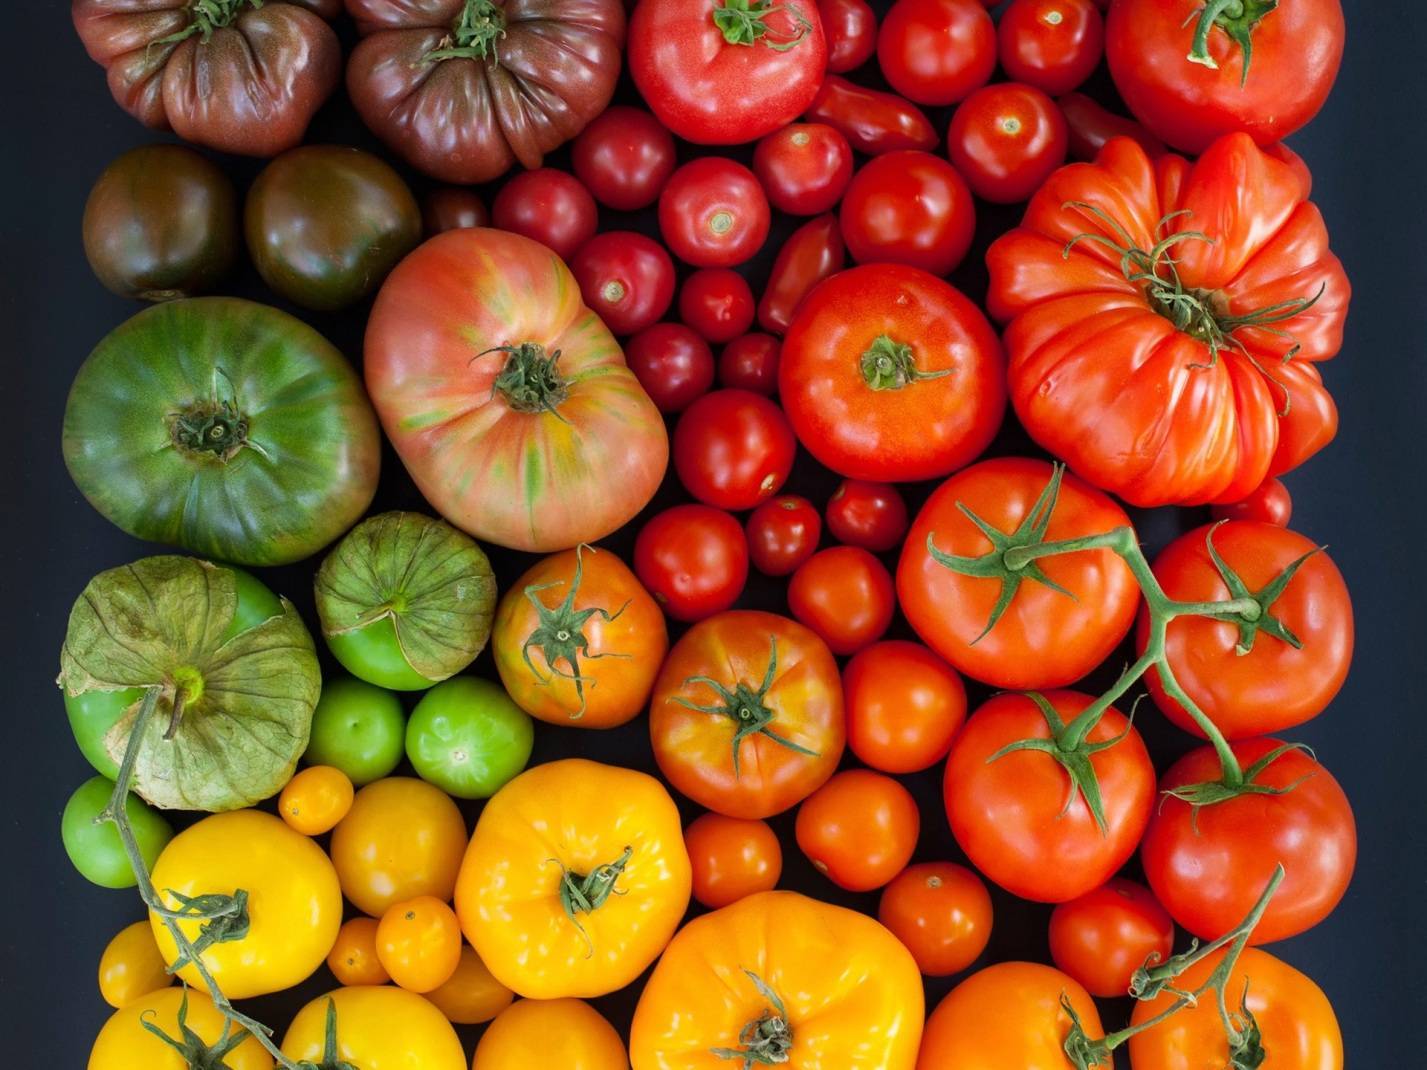 Описание штамбовых сортов томата: их особенности и фото